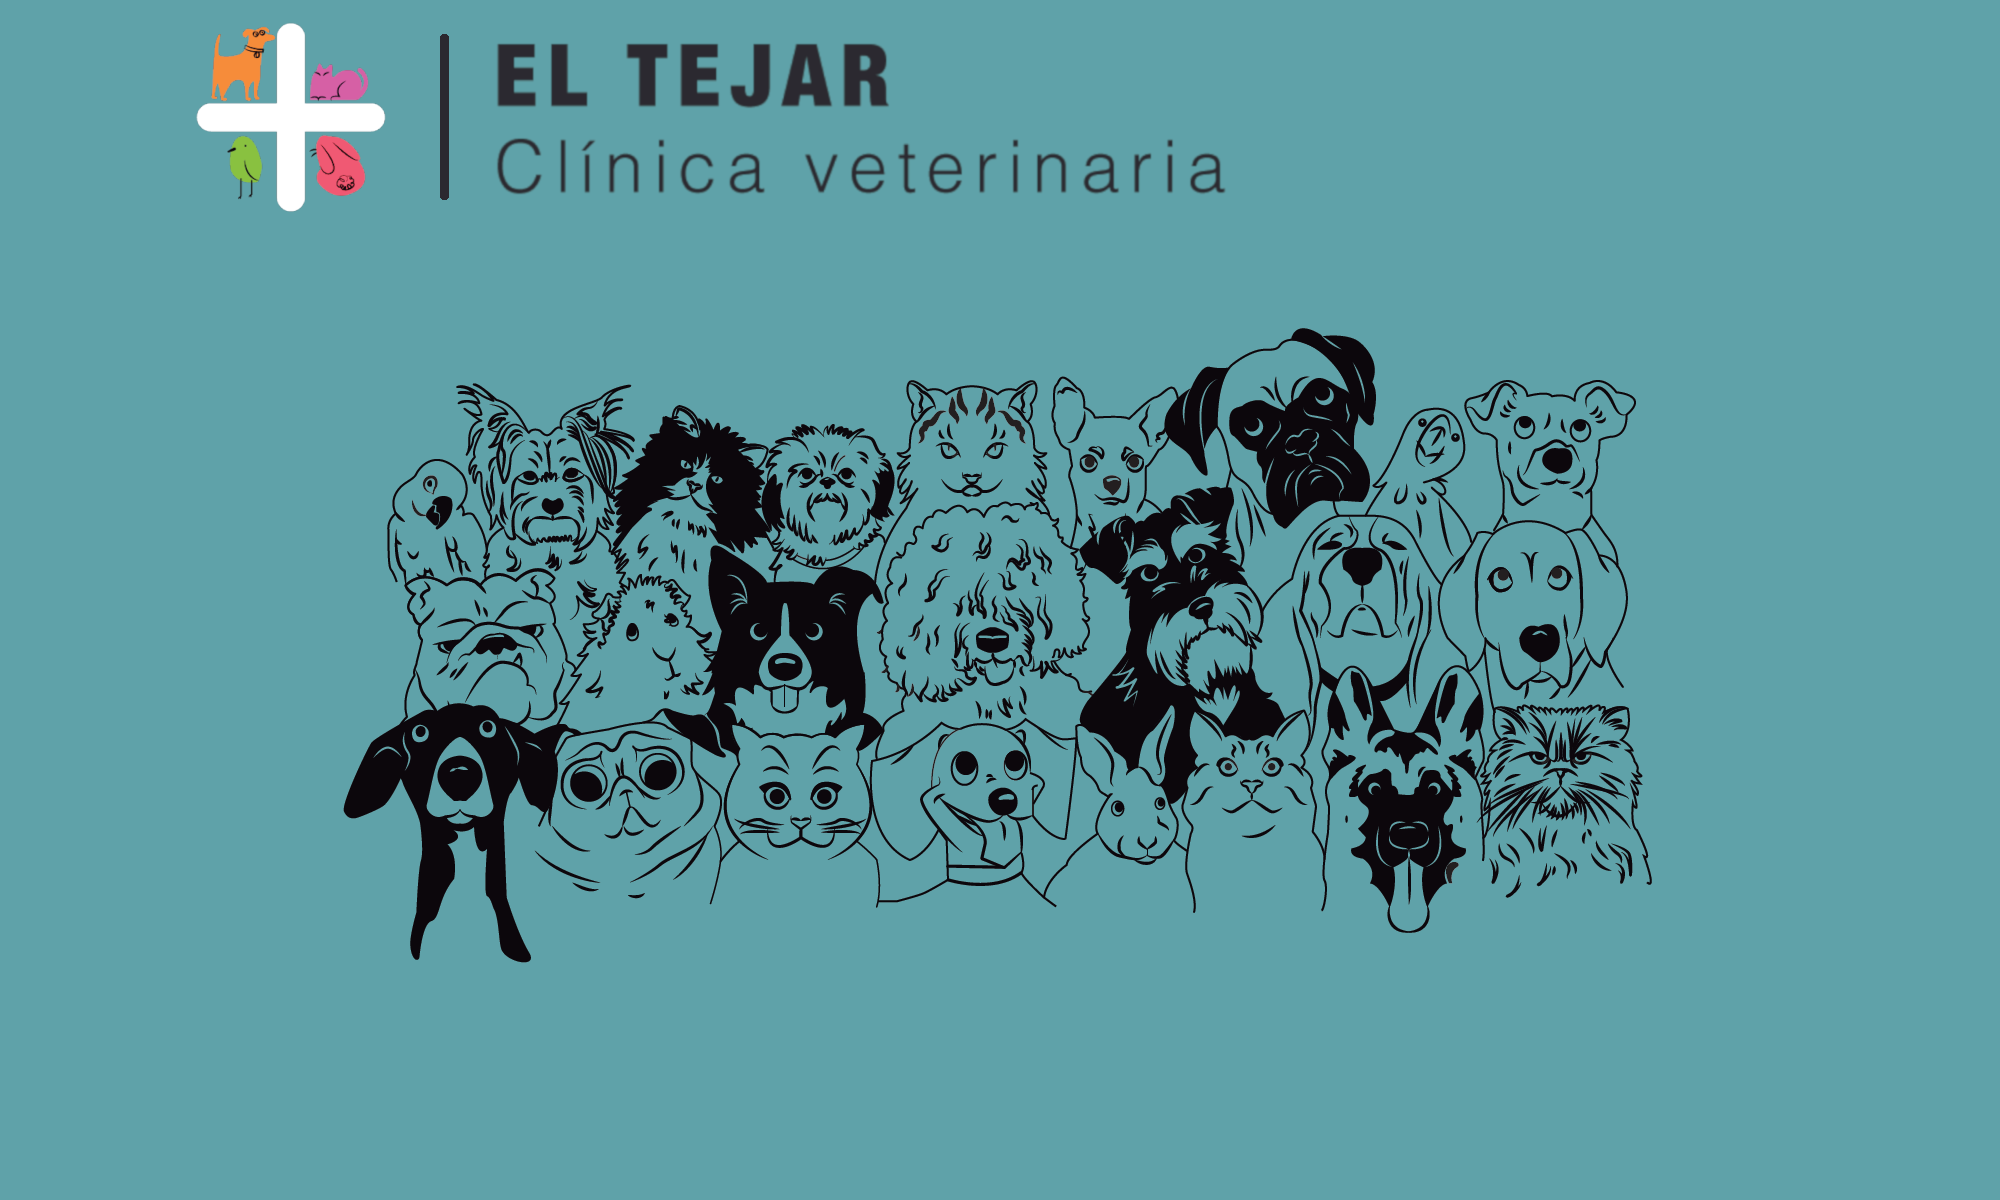 Clinica Veterinaria El Tejar